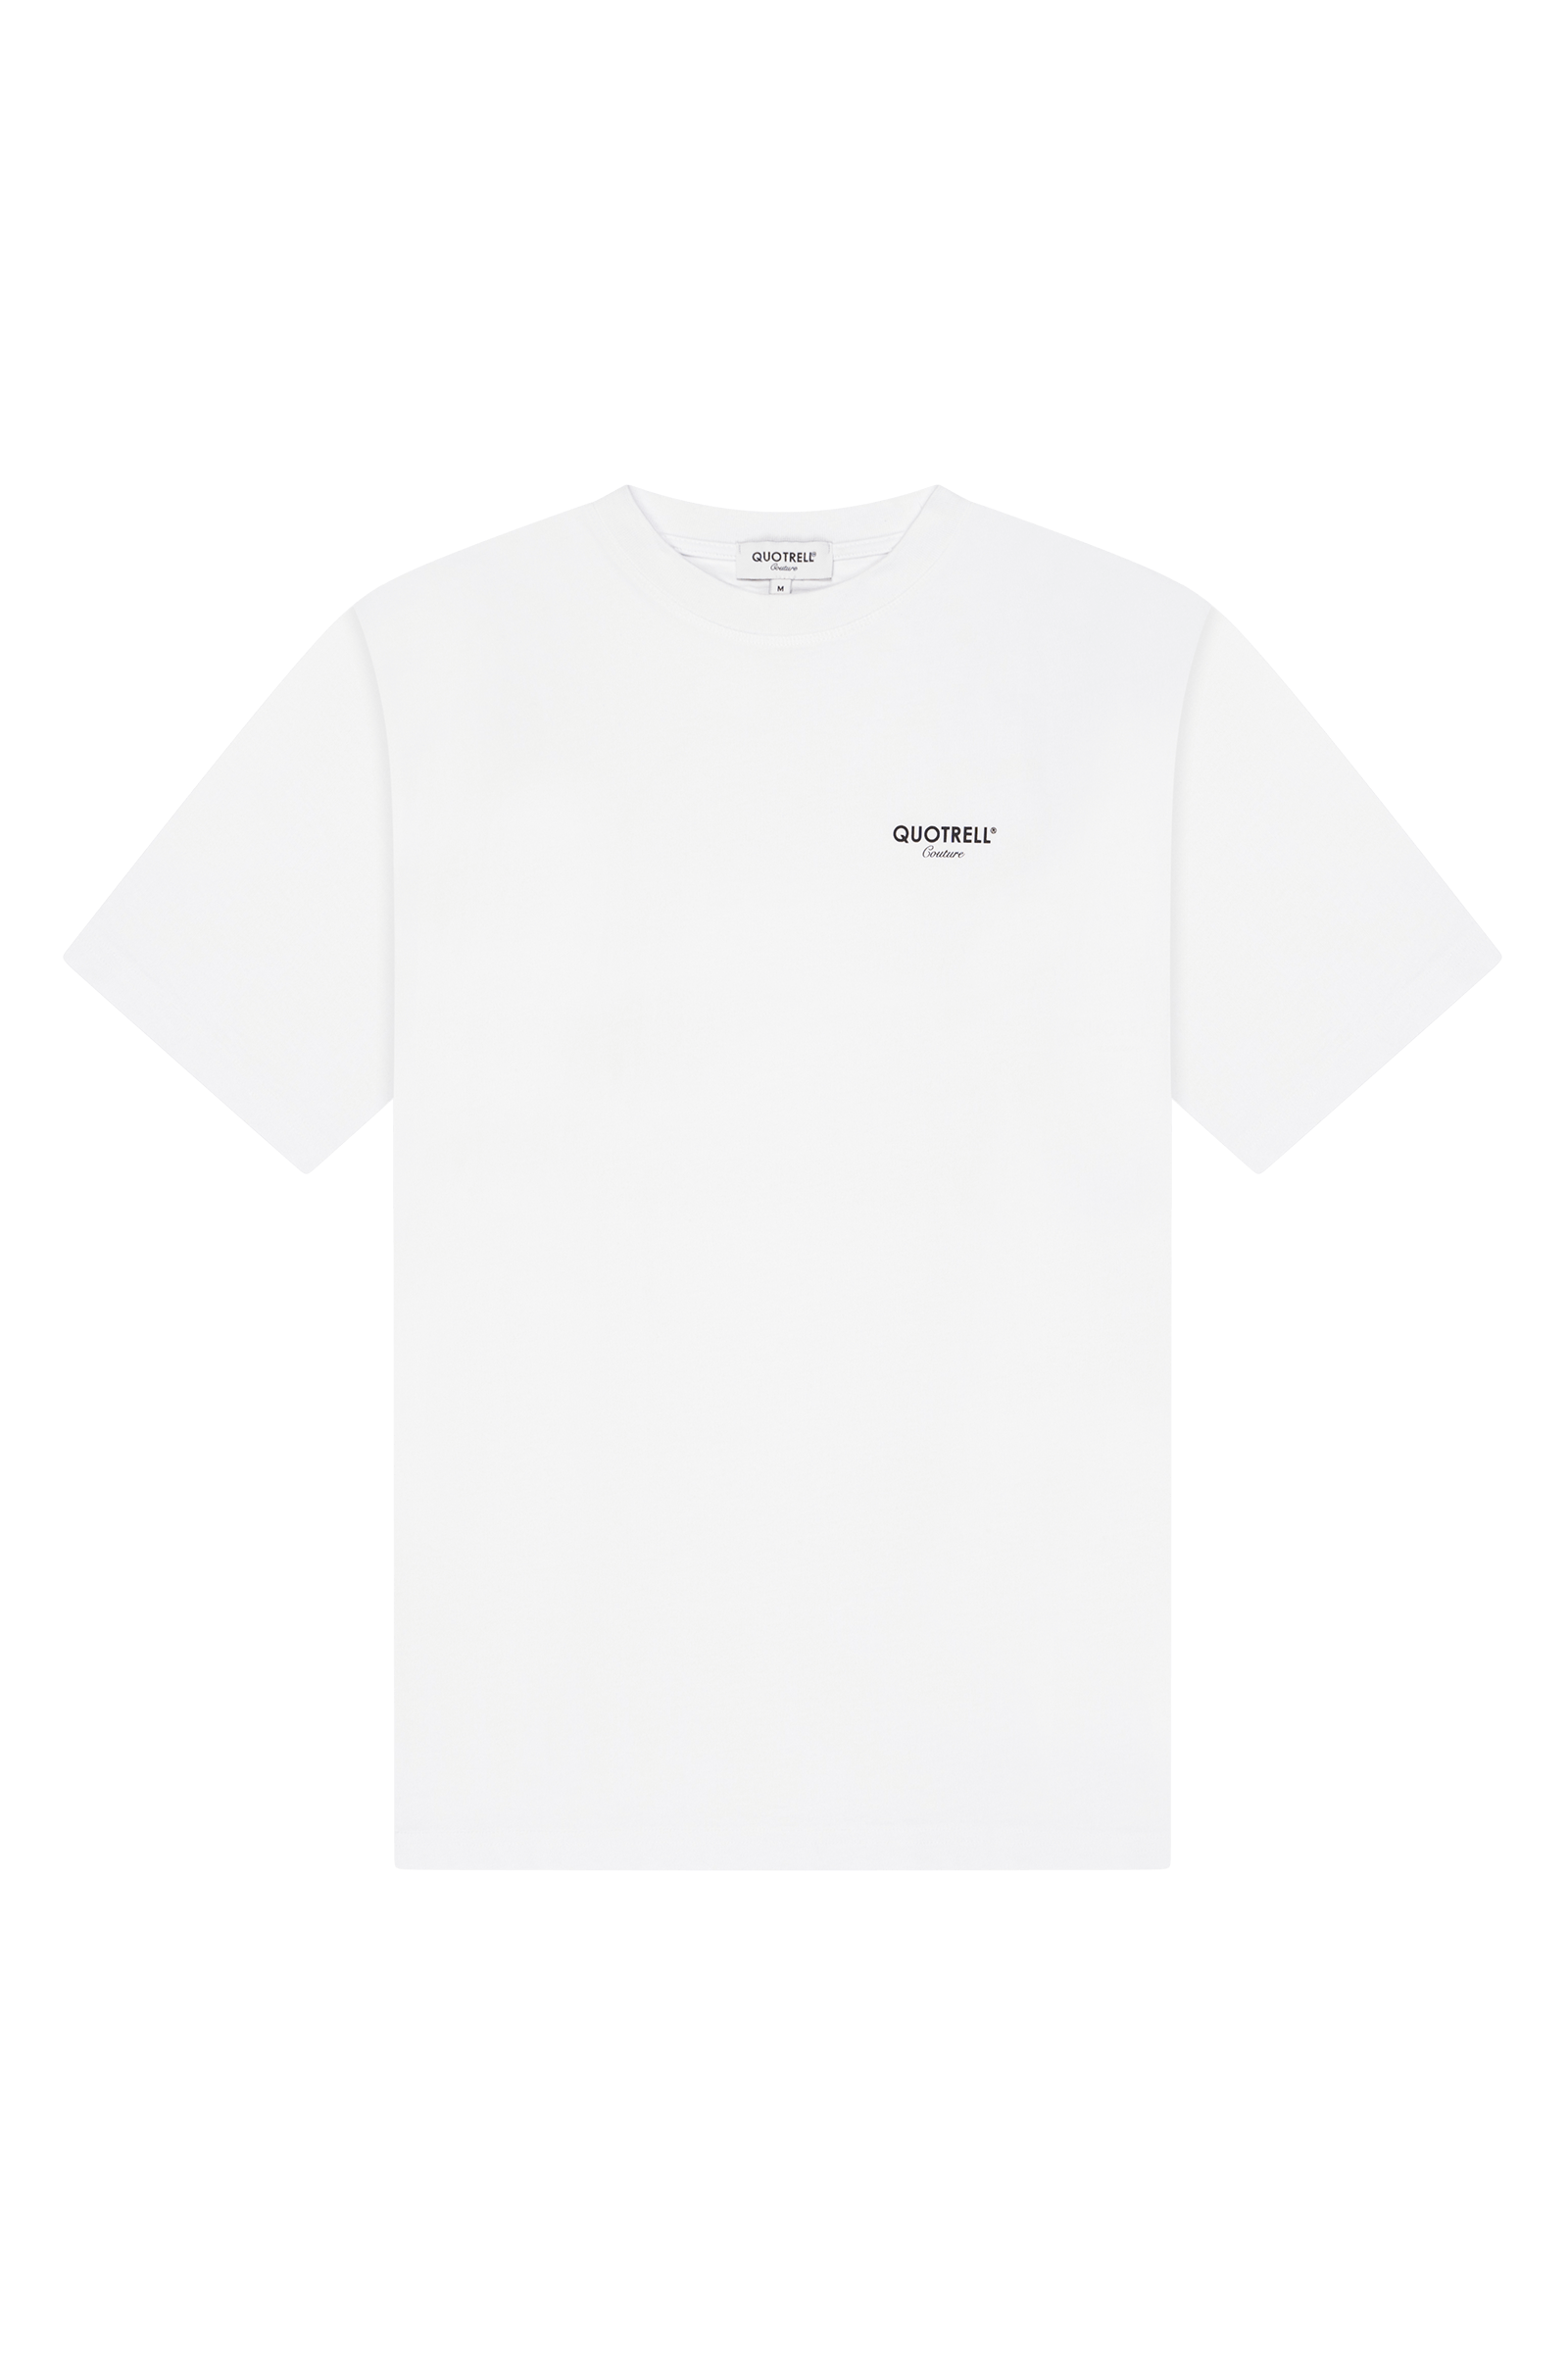 Quotrell Sarasota T-shirt